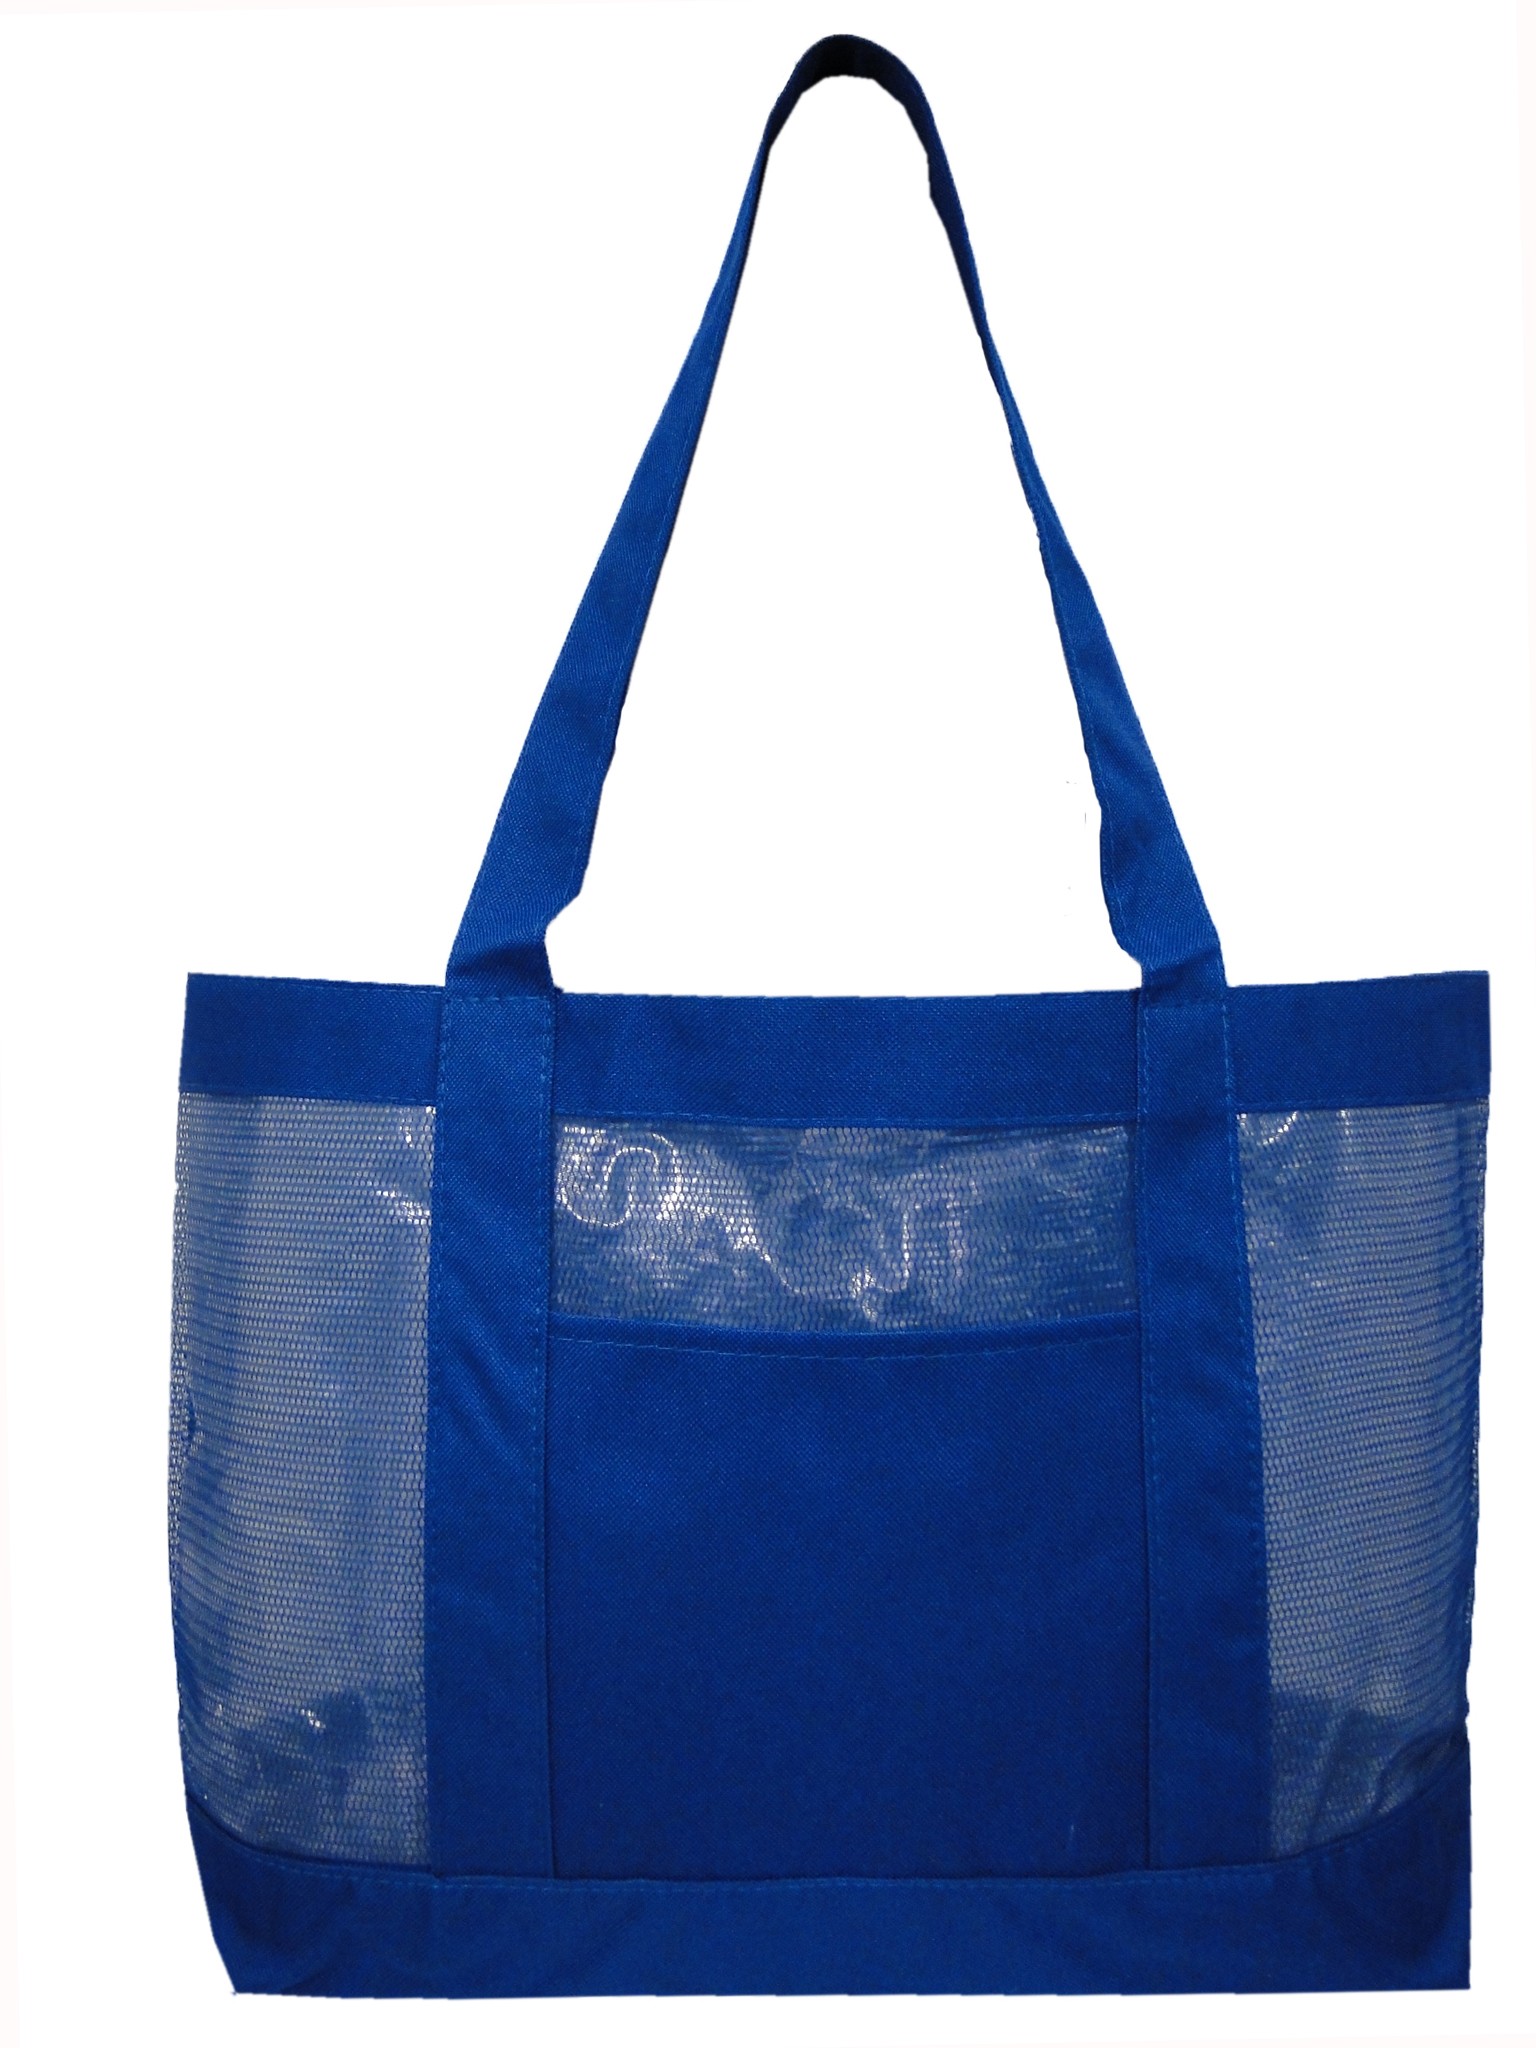 Fashion Mesh Tote Bag